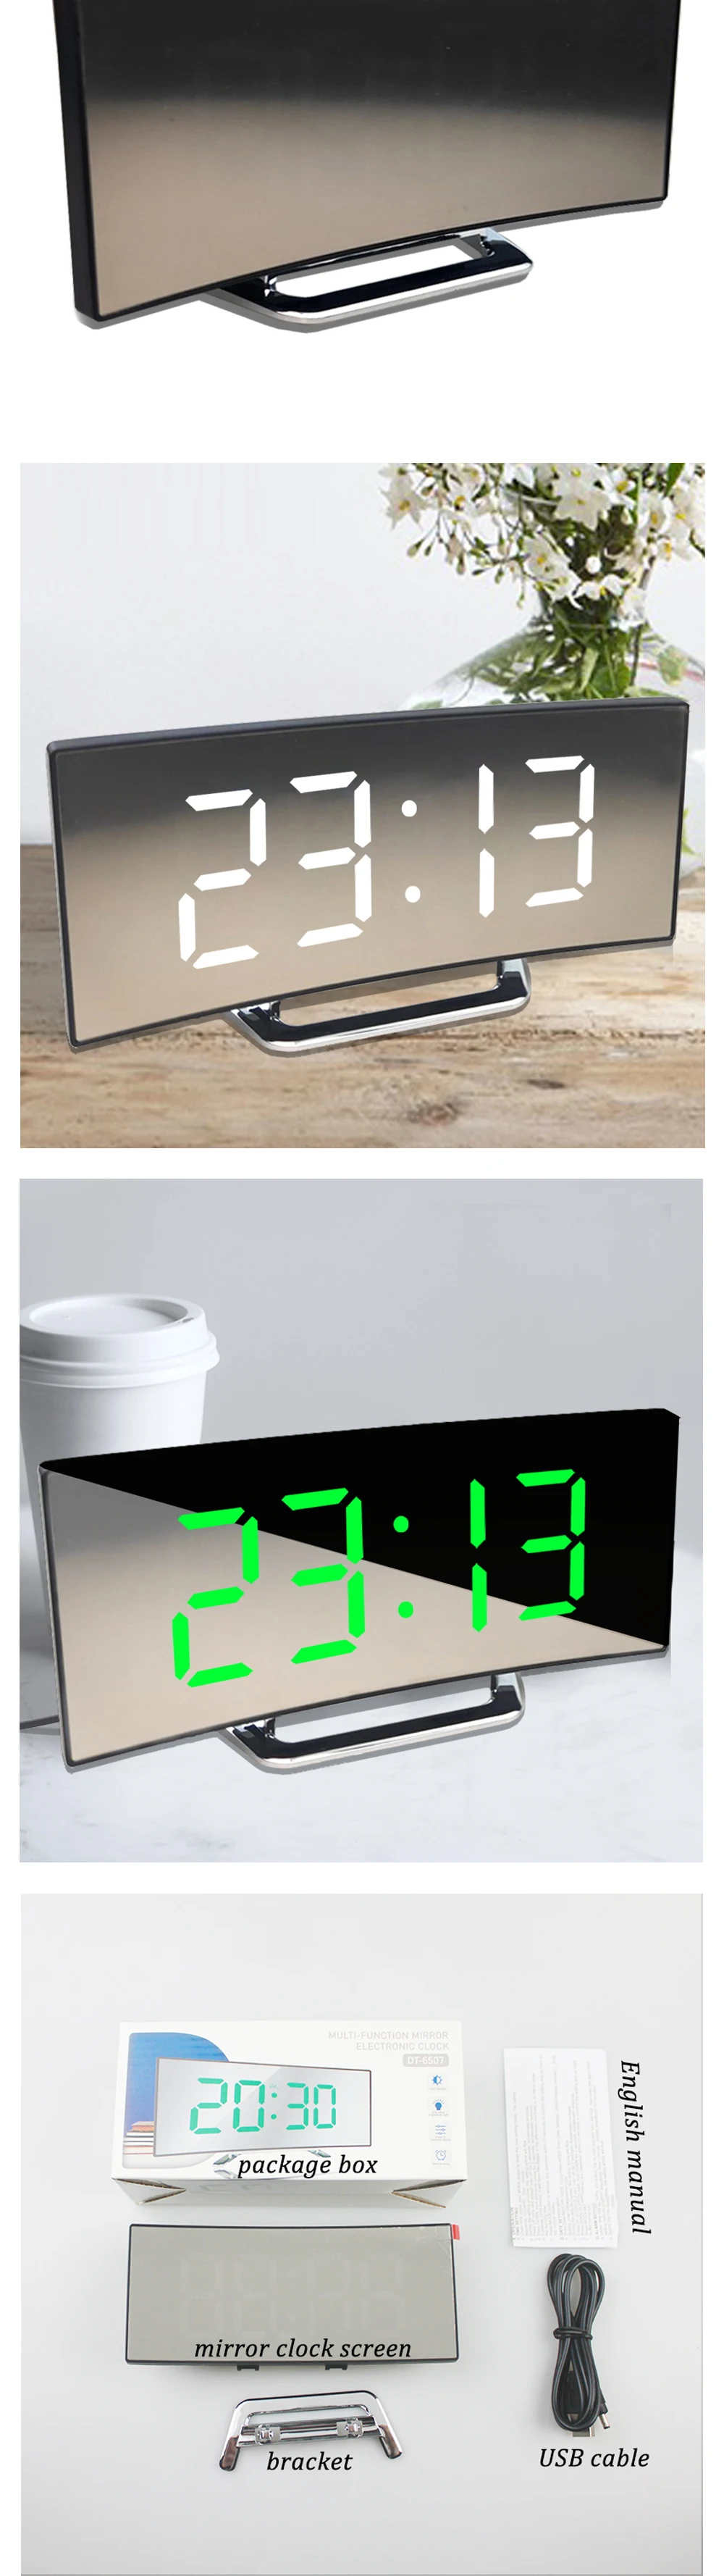 Digital Wecker Alarm Uhren für Kinder Schlafzimmer Temperatur Snooze Funktion Schreibtisch Tisch Uhr LED Uhr Elektronische Uhr Tisch